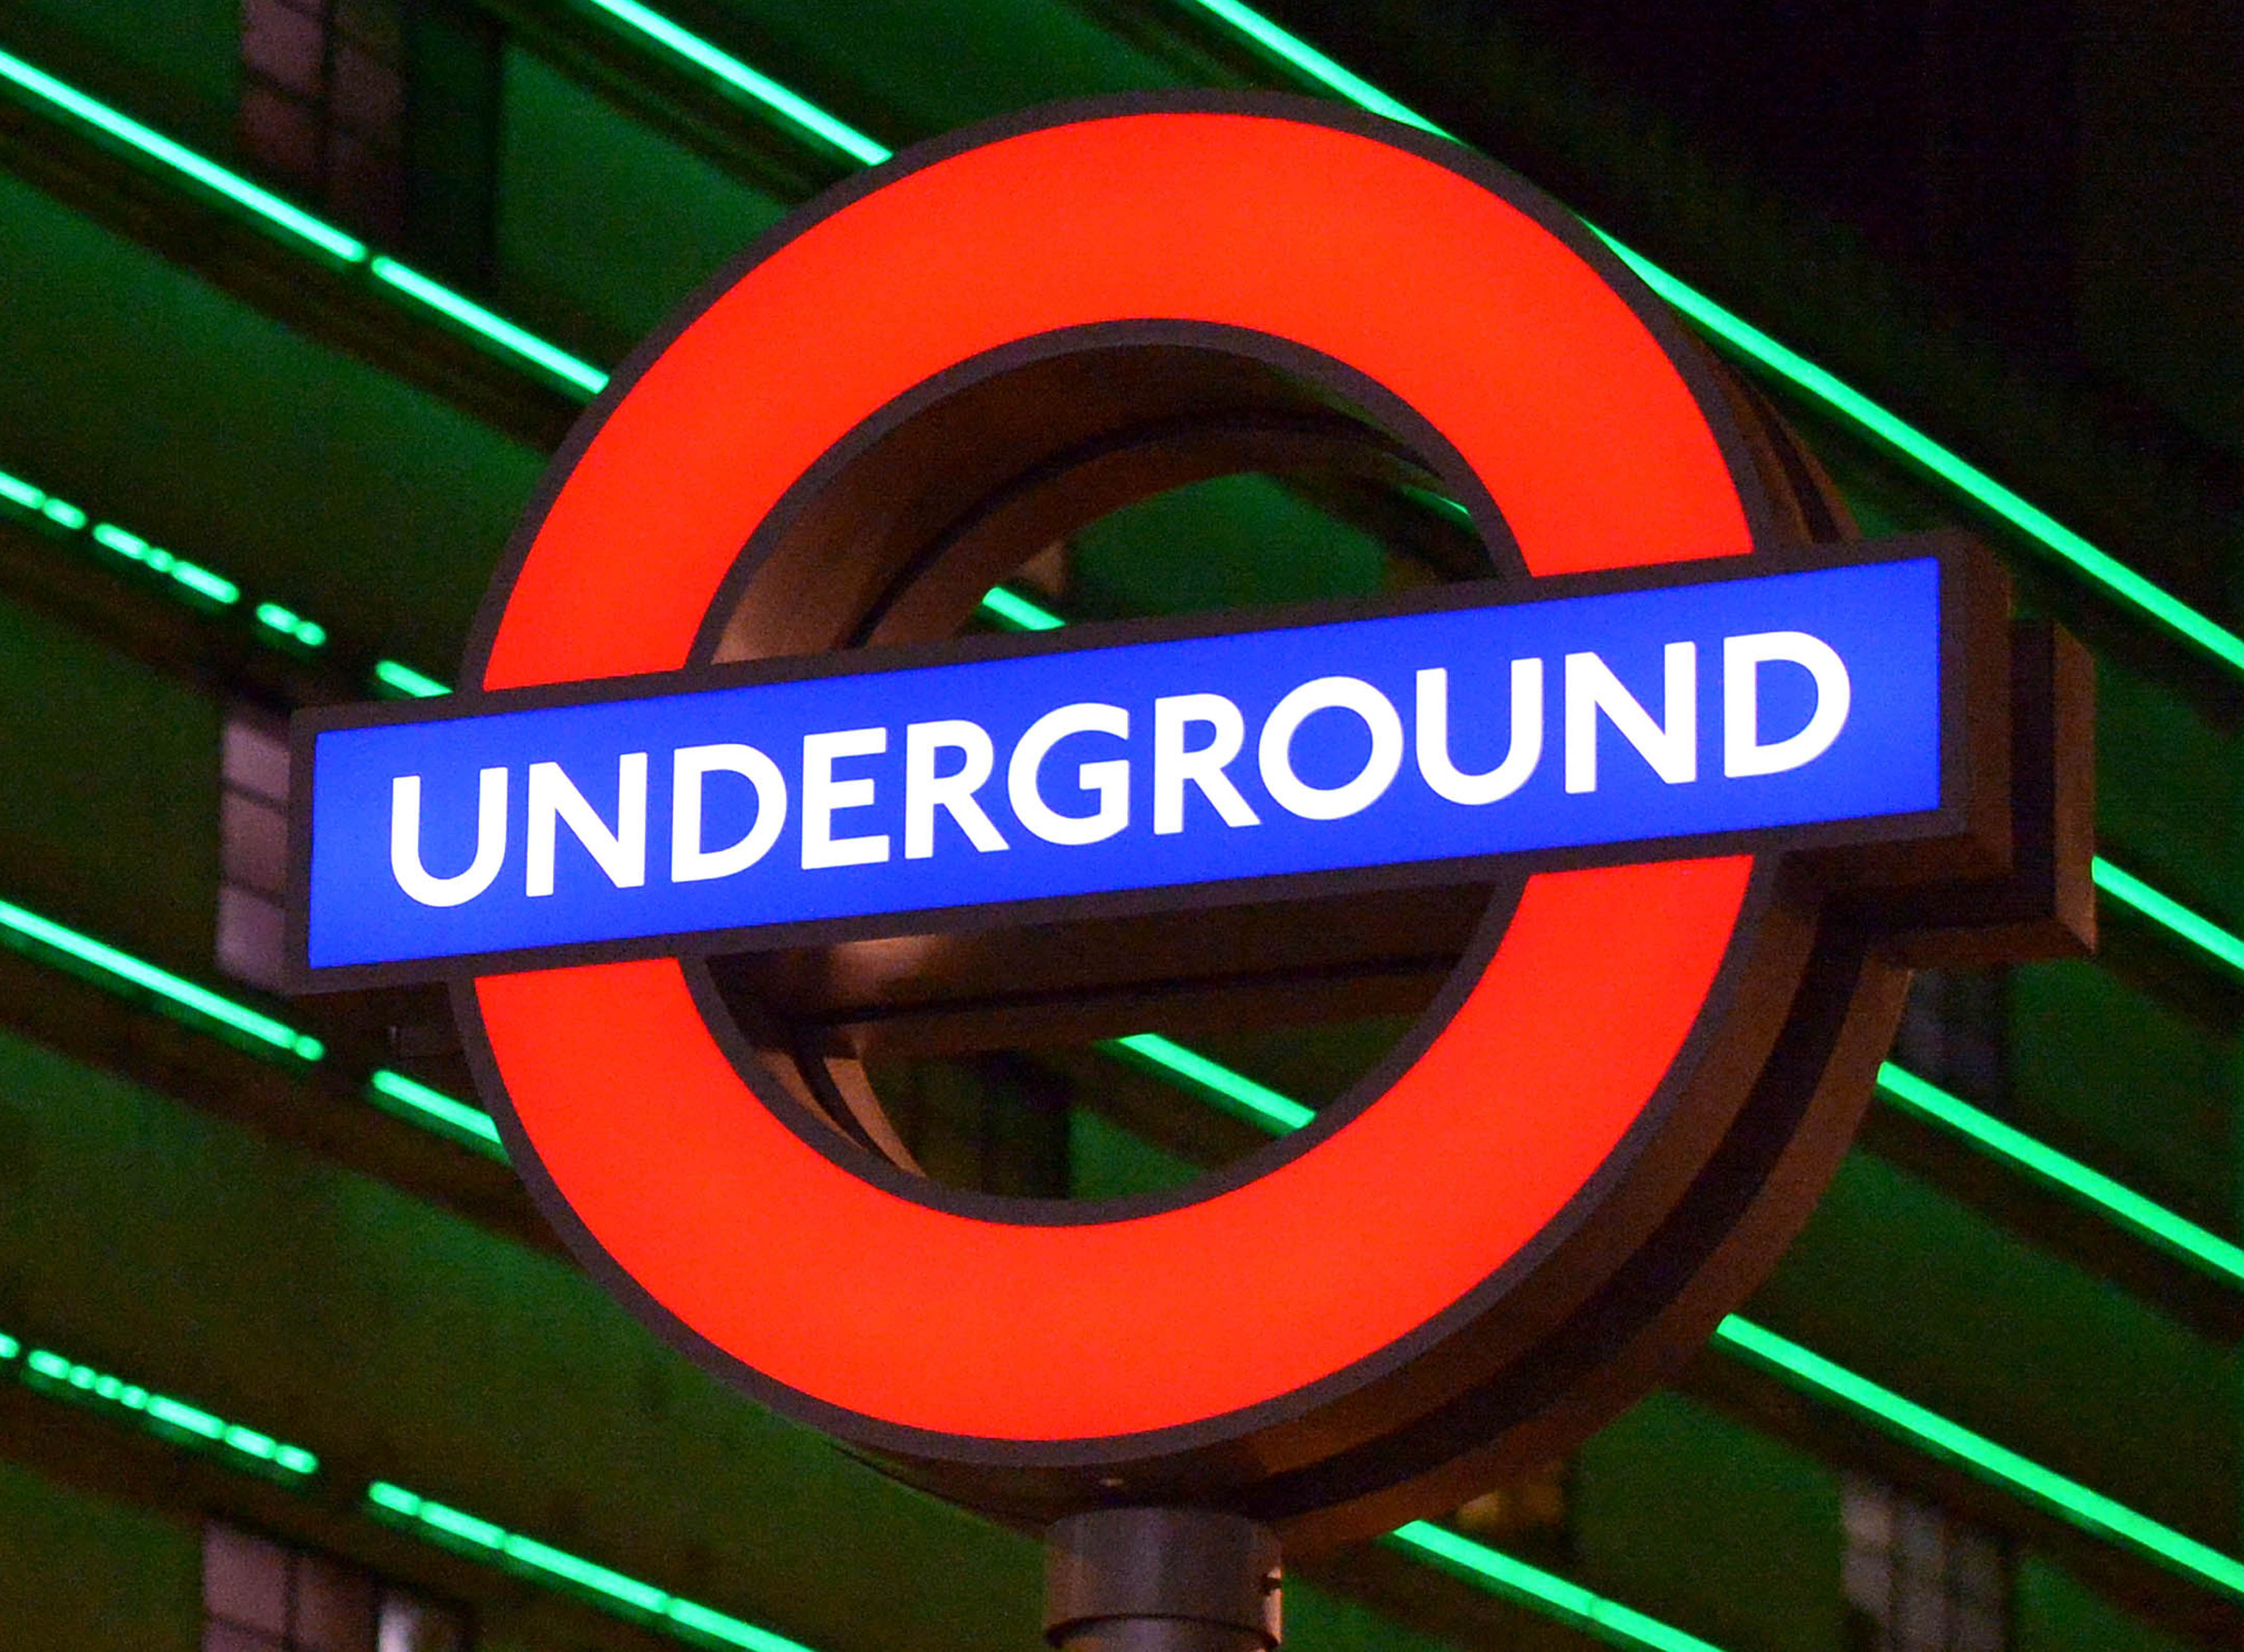 London underground steam фото 110